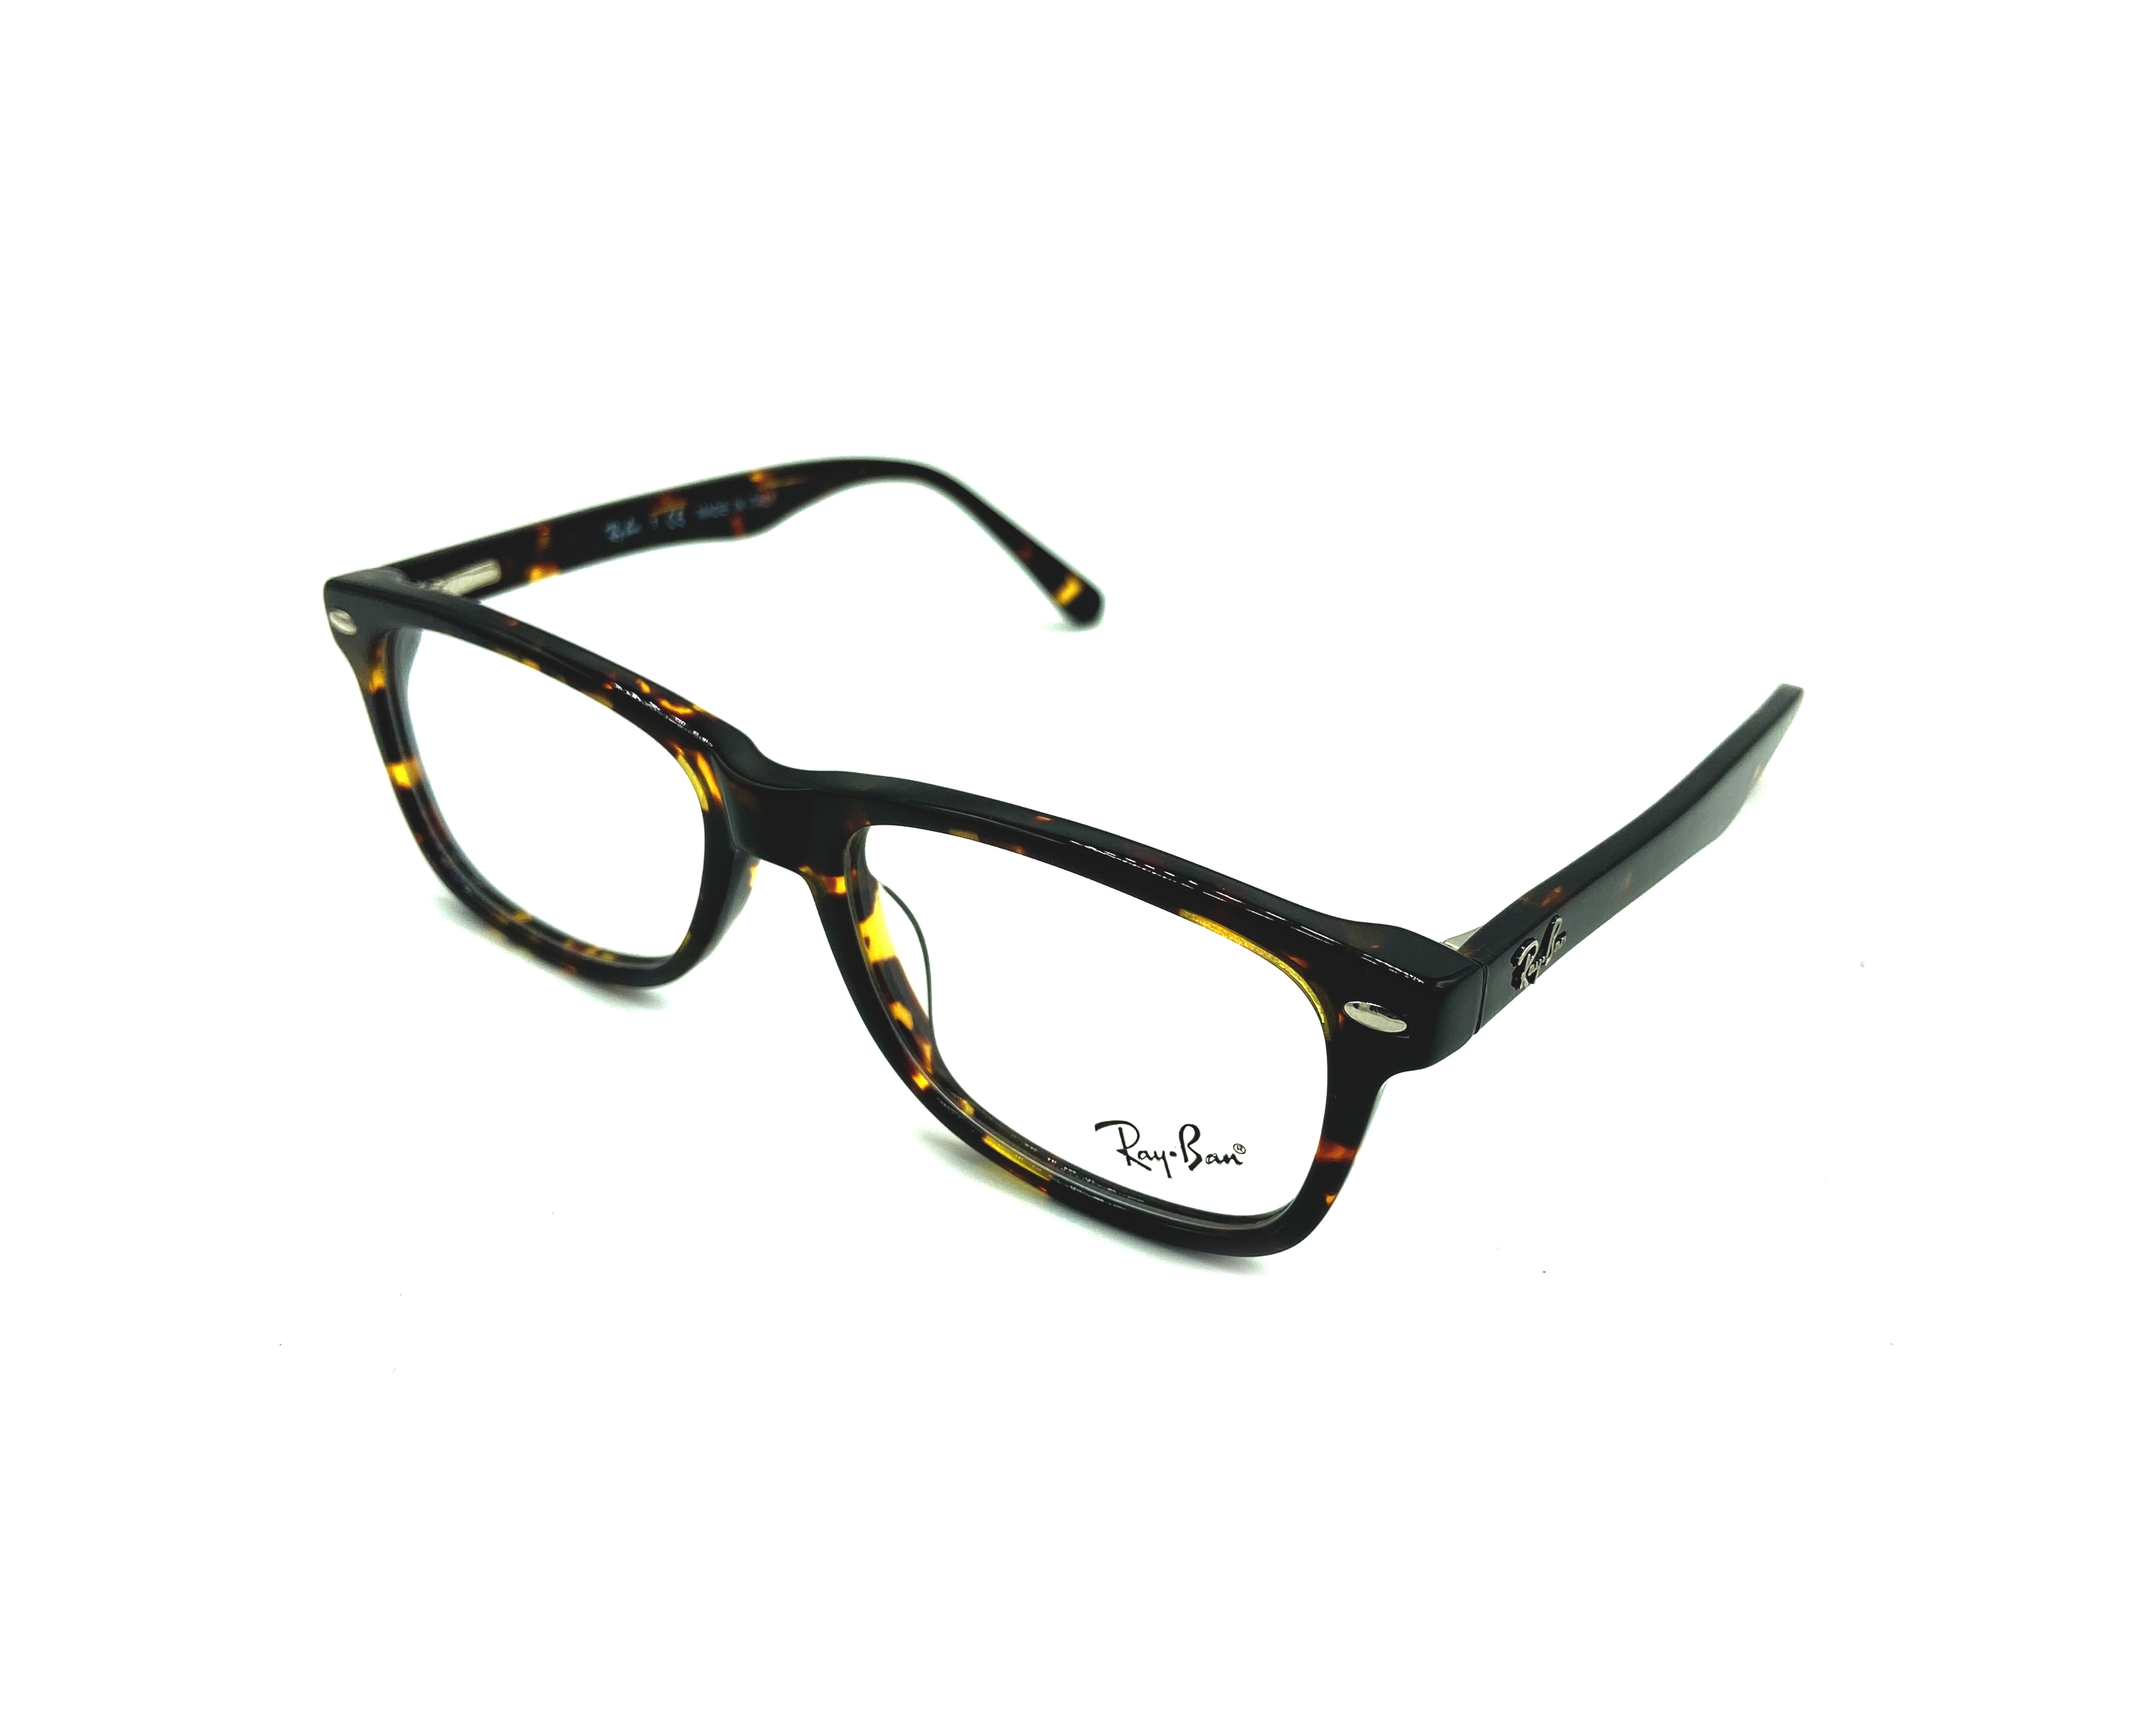 NS Luxury - 5228 - Tortoise - Eyeglasses